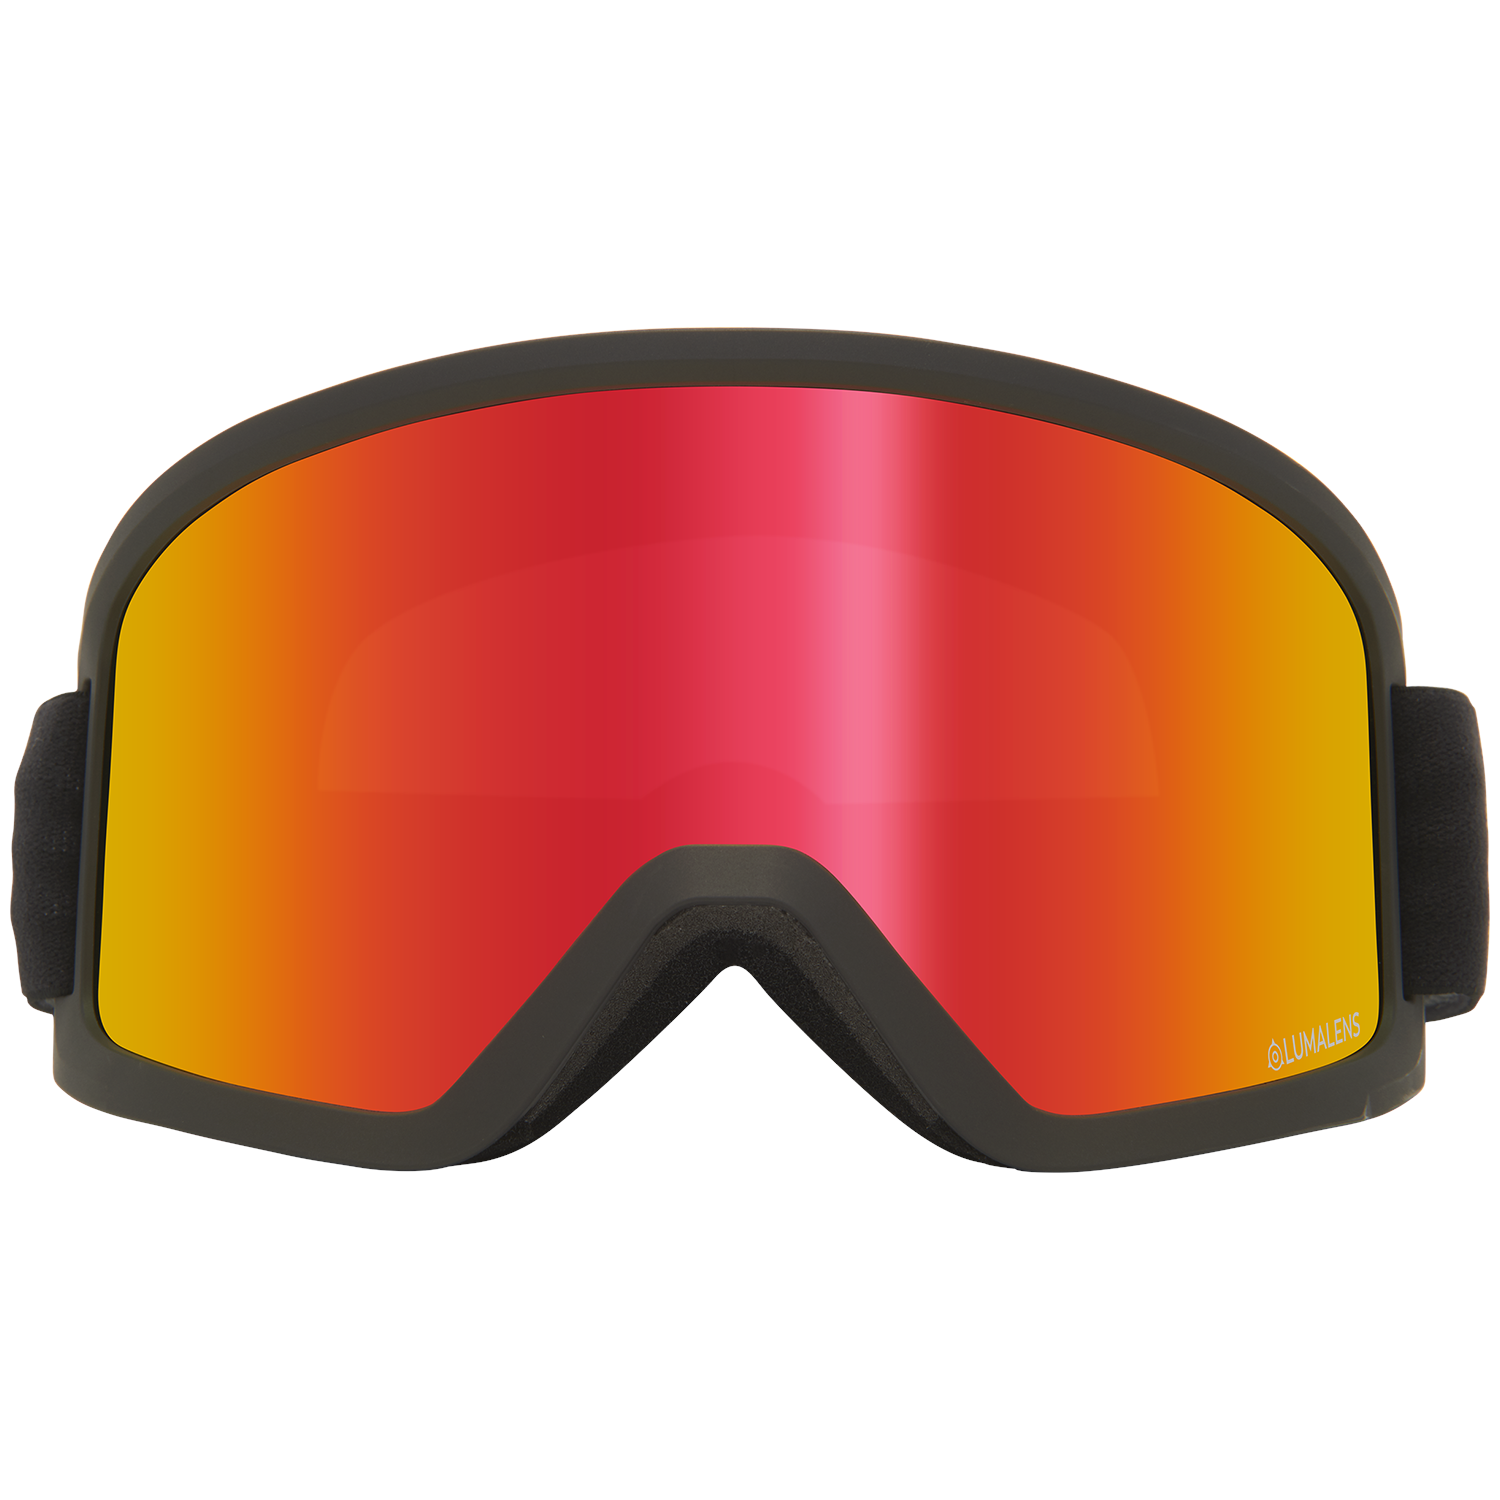 Горнолыжные очки Dragon DX3 OTG с низкой посадкой, черный